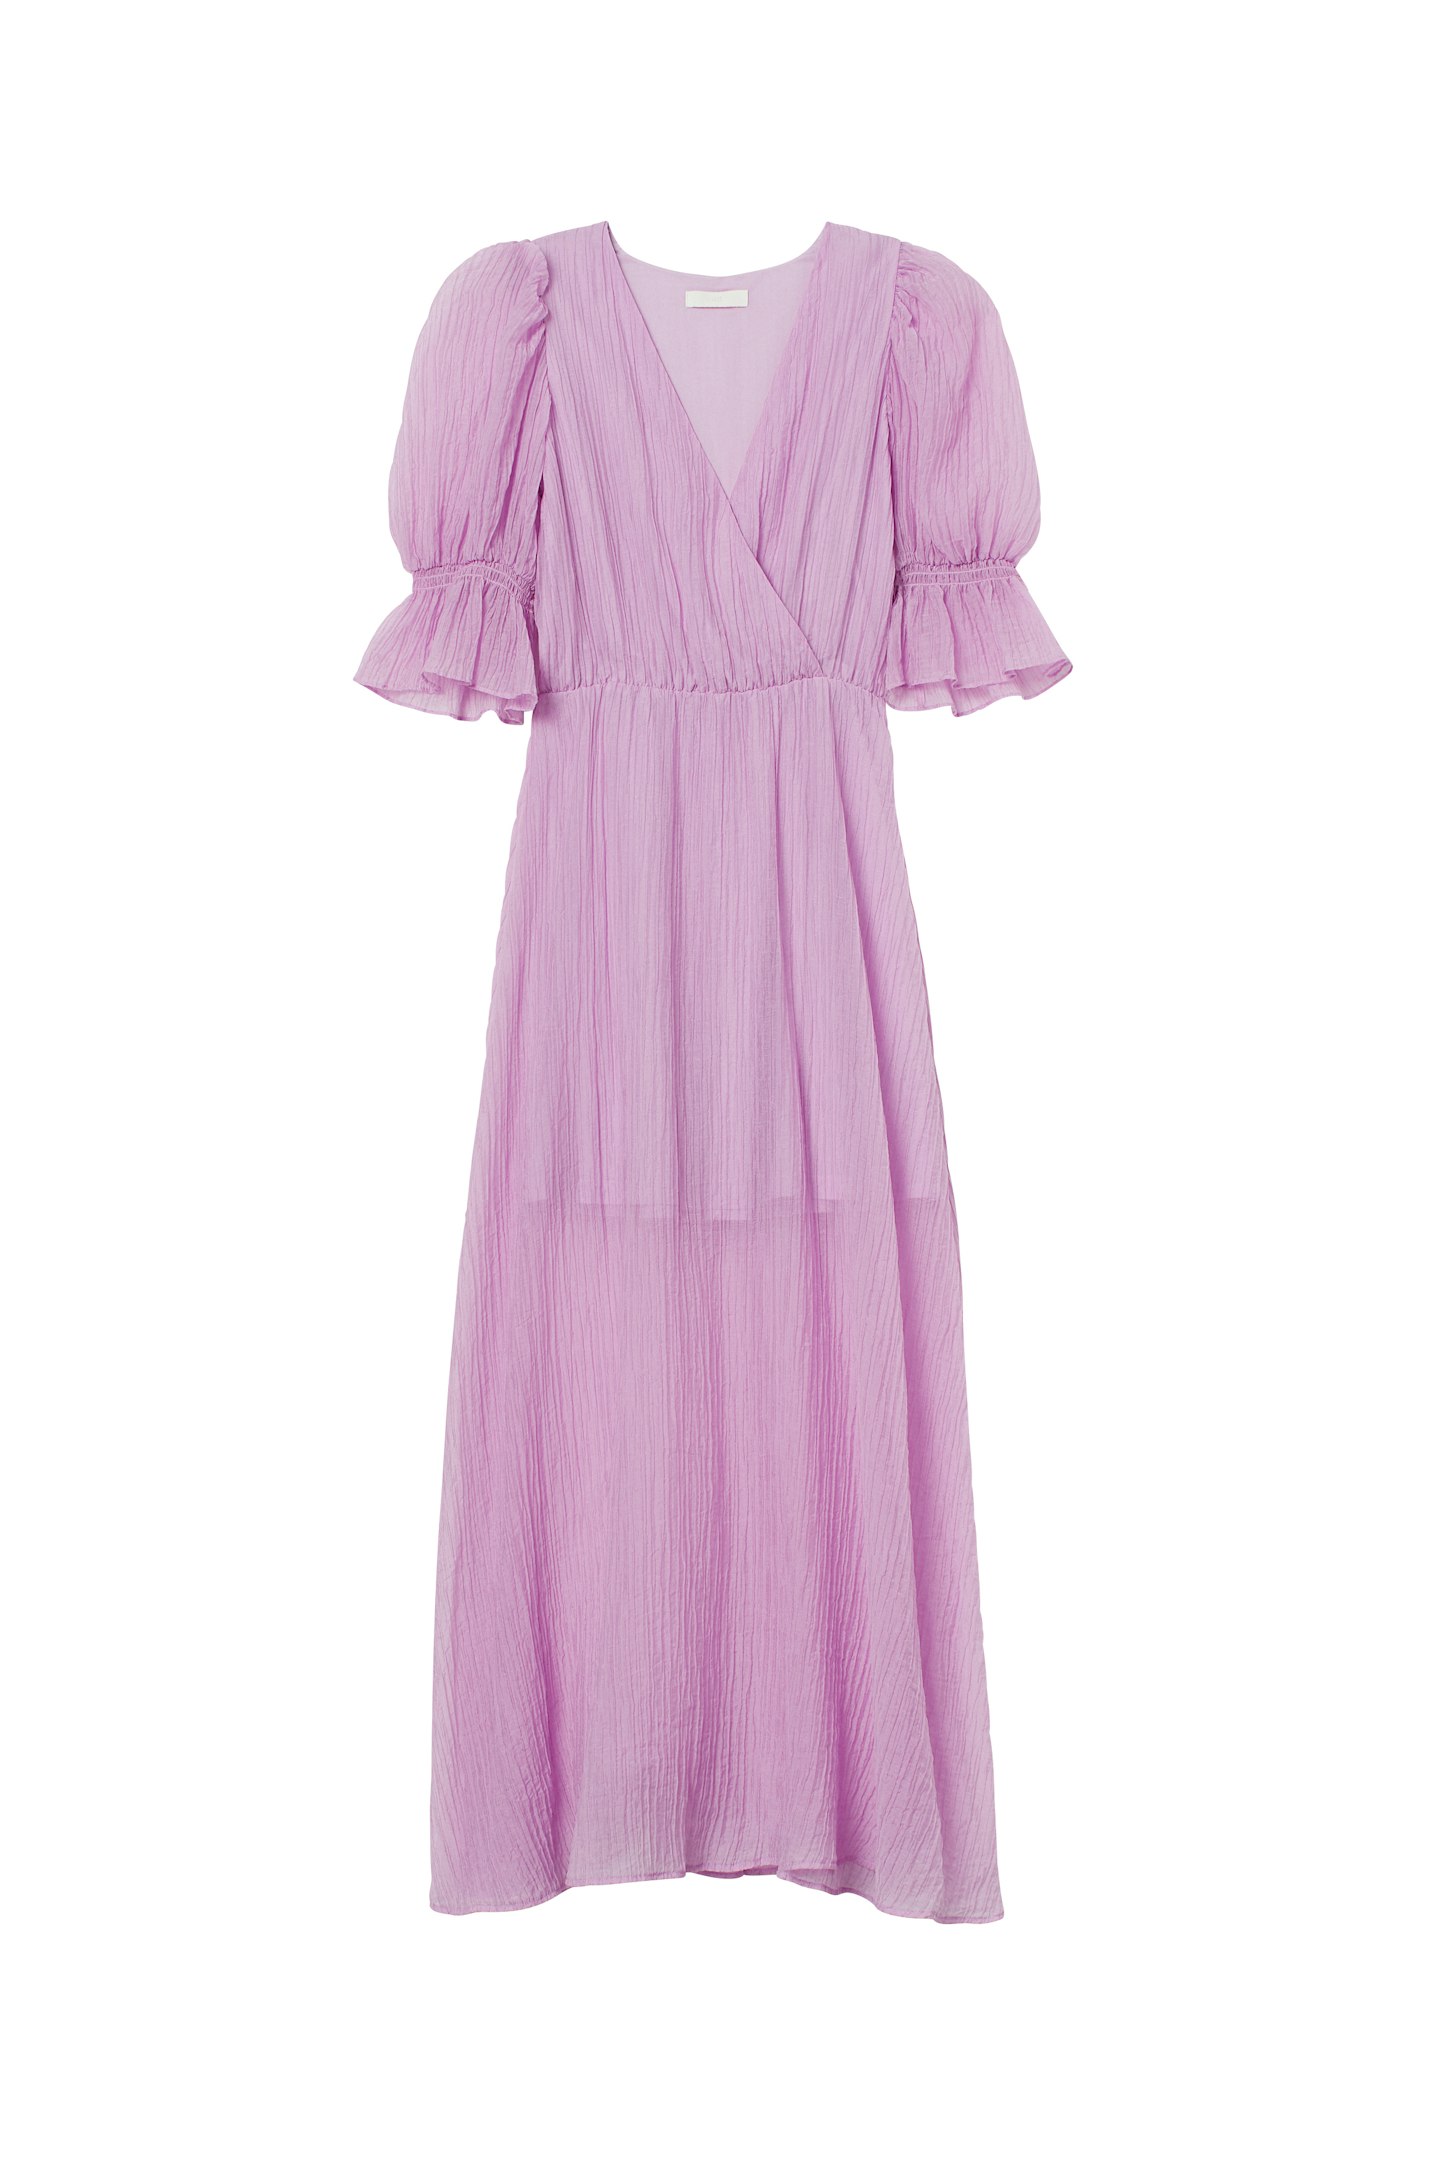 Purple Lyocell-Blend Dress, £34.99